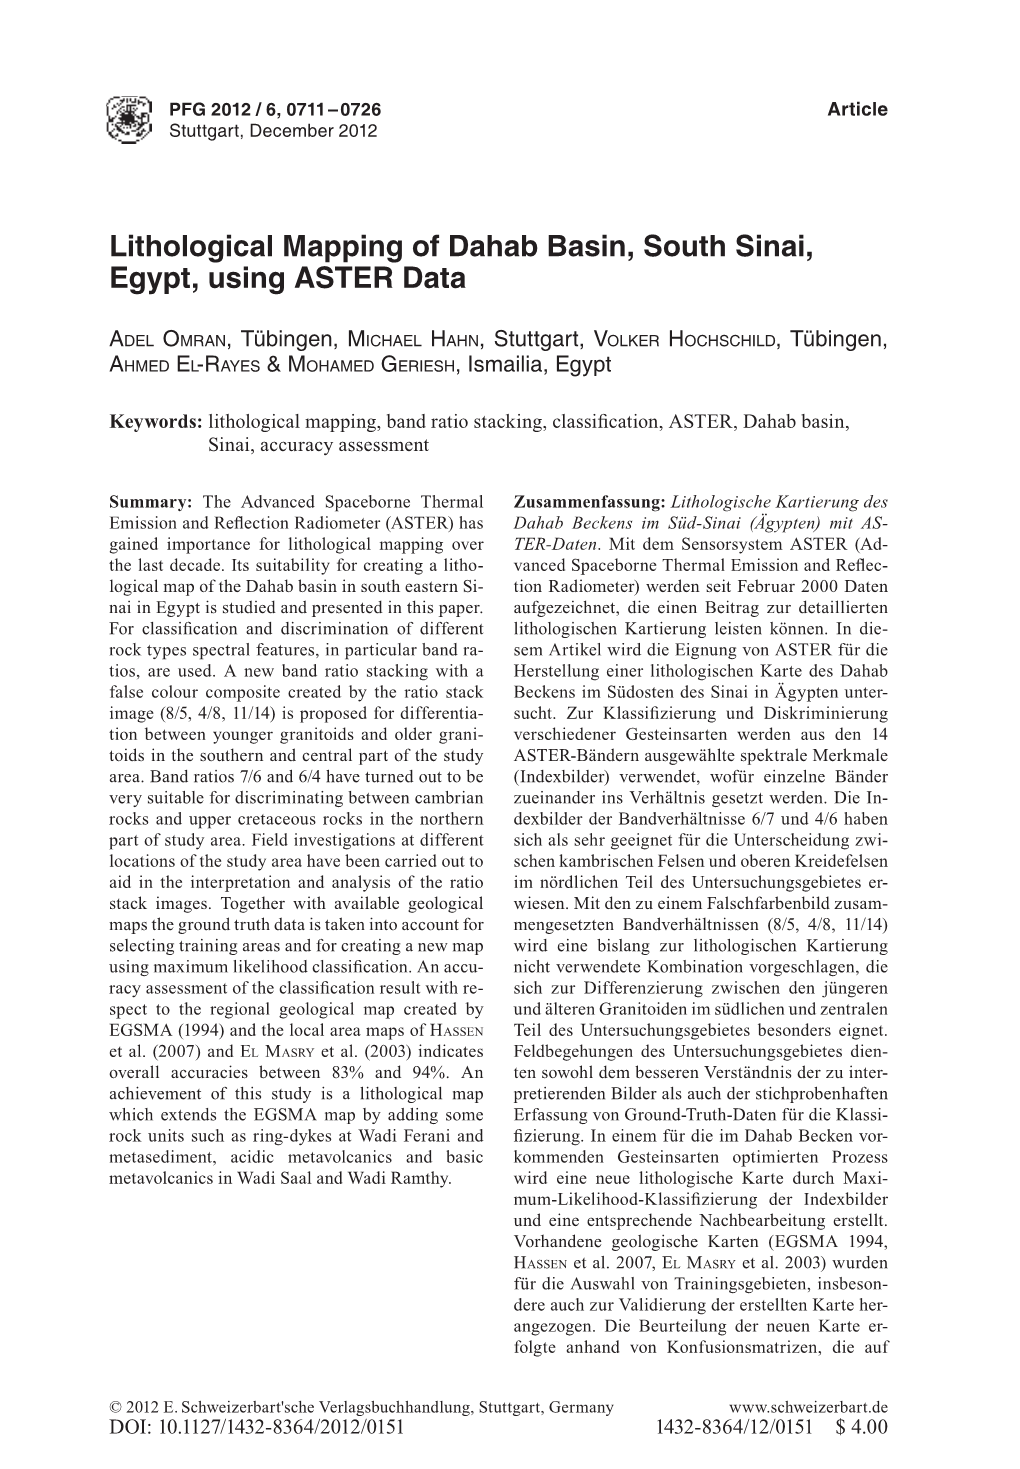 Lithological Mapping of Dahab Basin, South Sinai, Egypt, Using ASTER Data